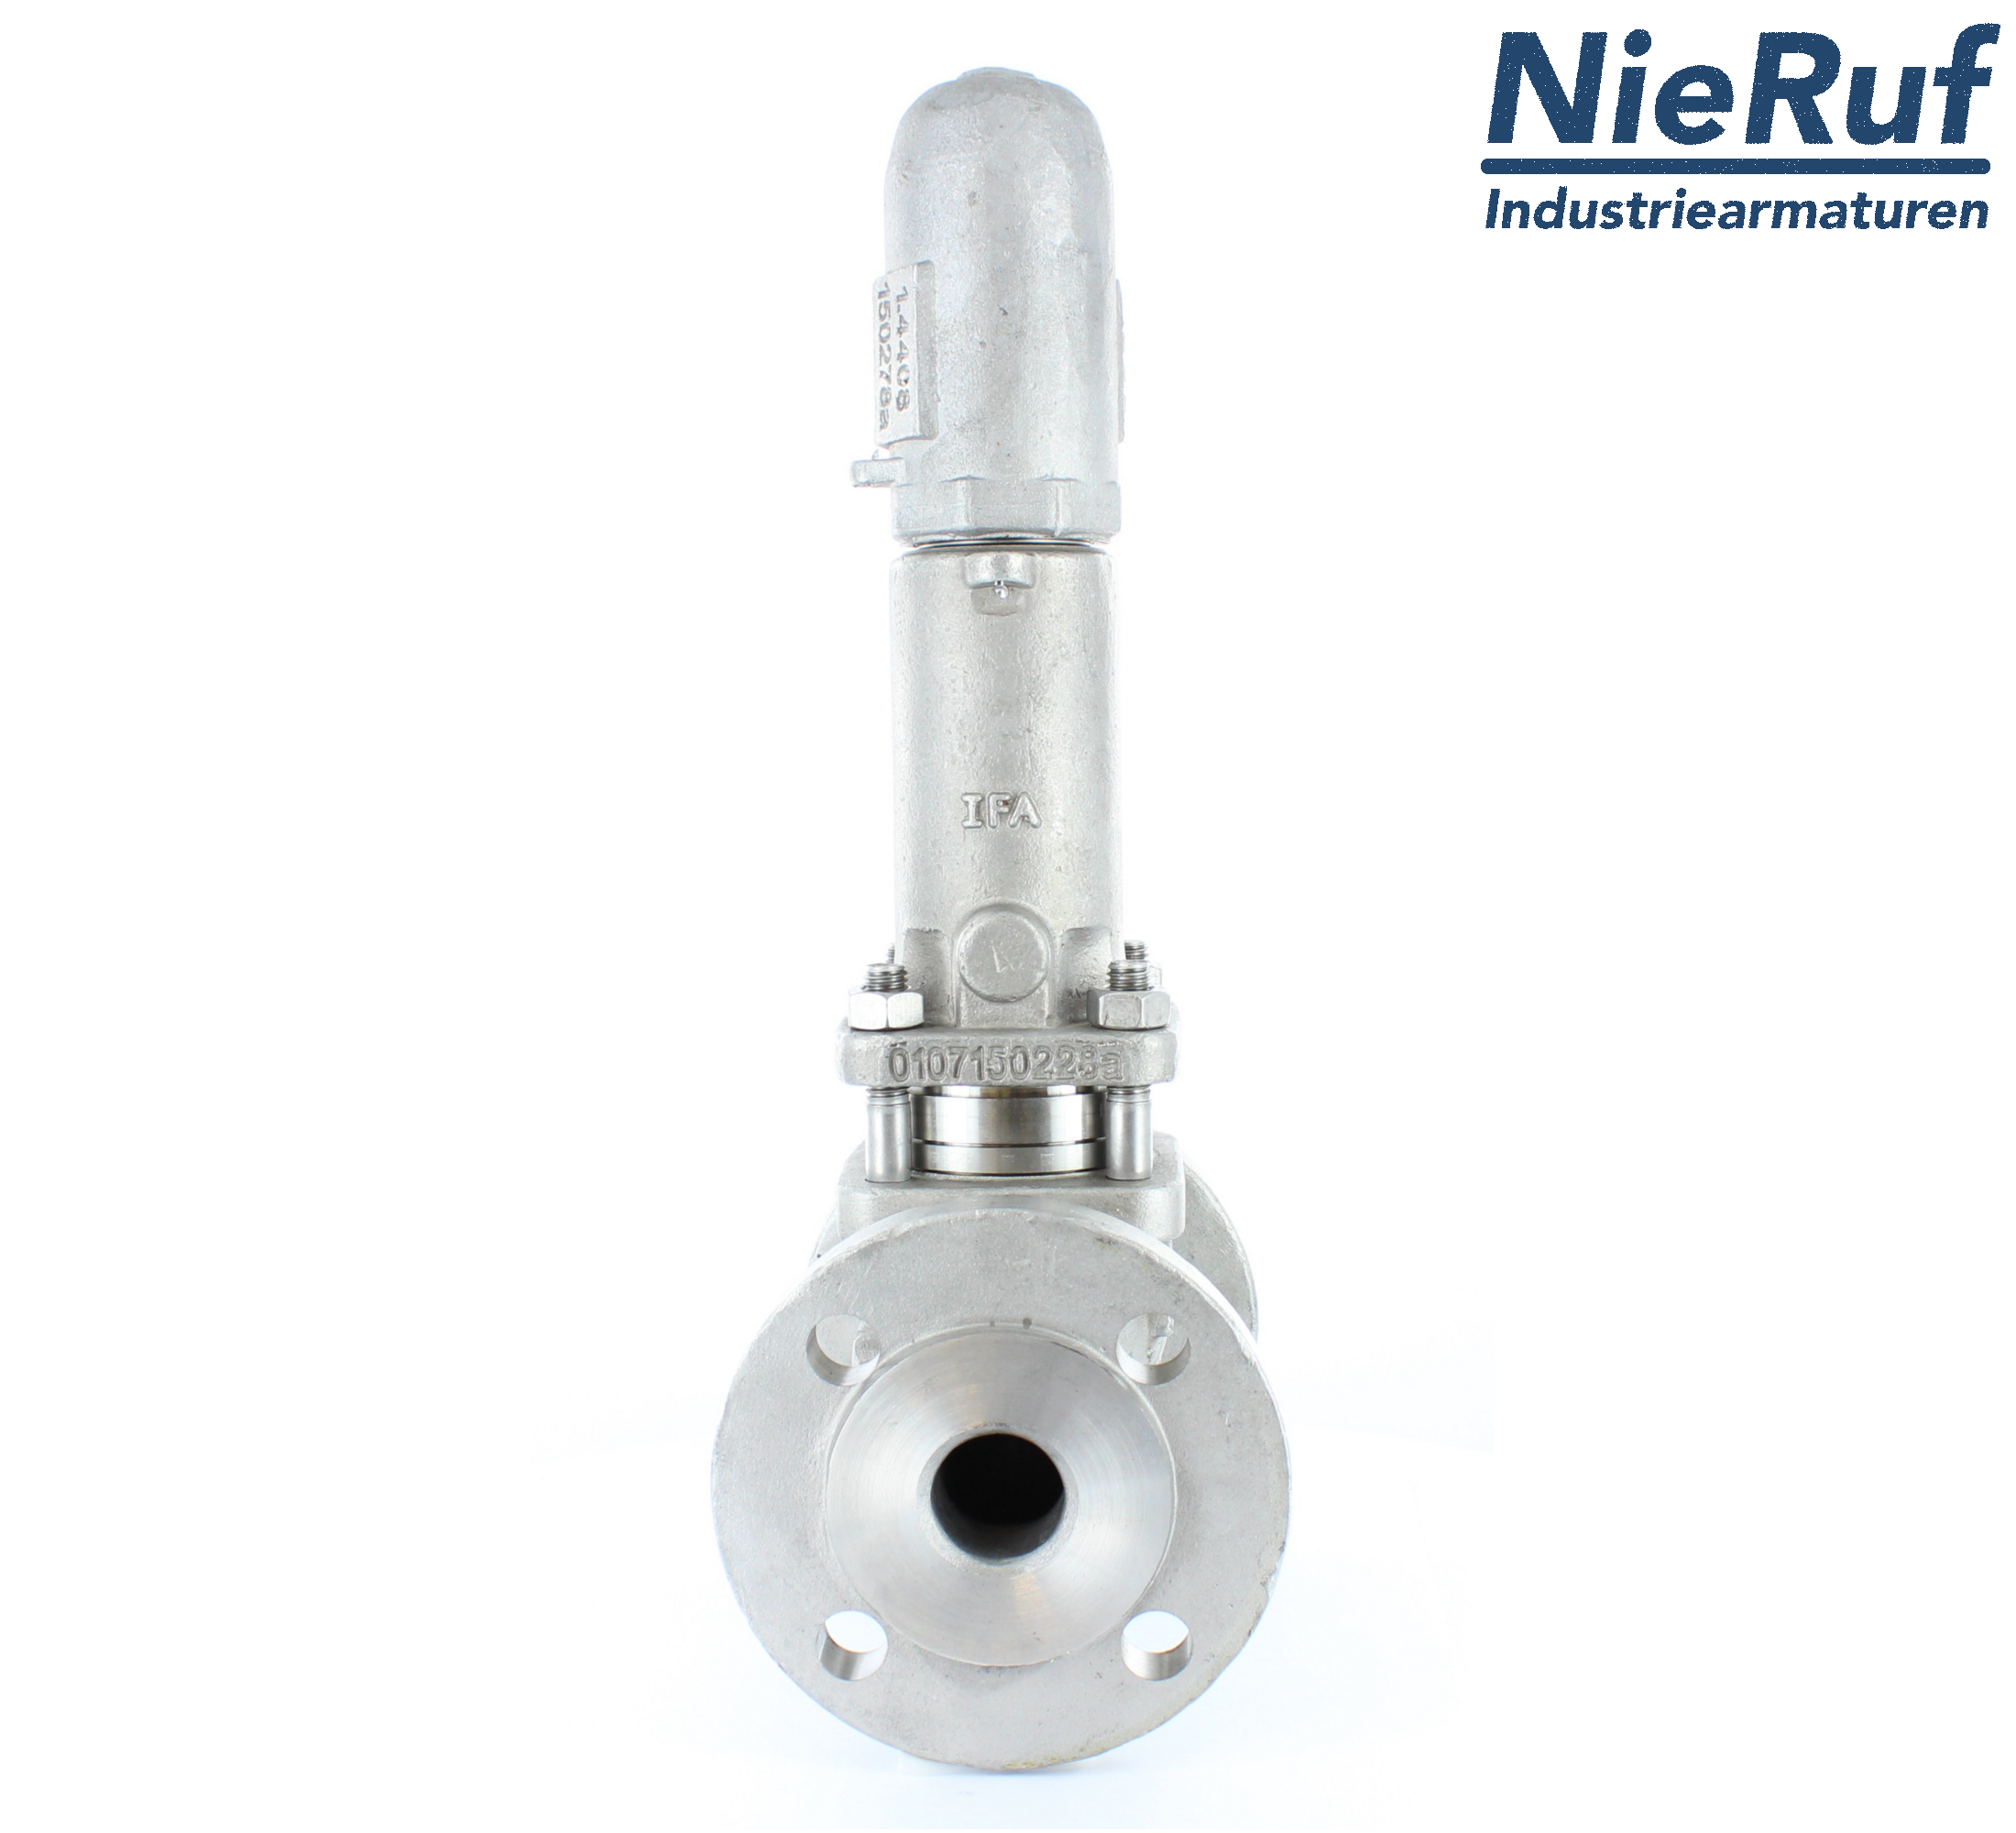 piston overflow valve DN 80 UV13 cast iron 1.0619+N 2,0 - 5,0 bar